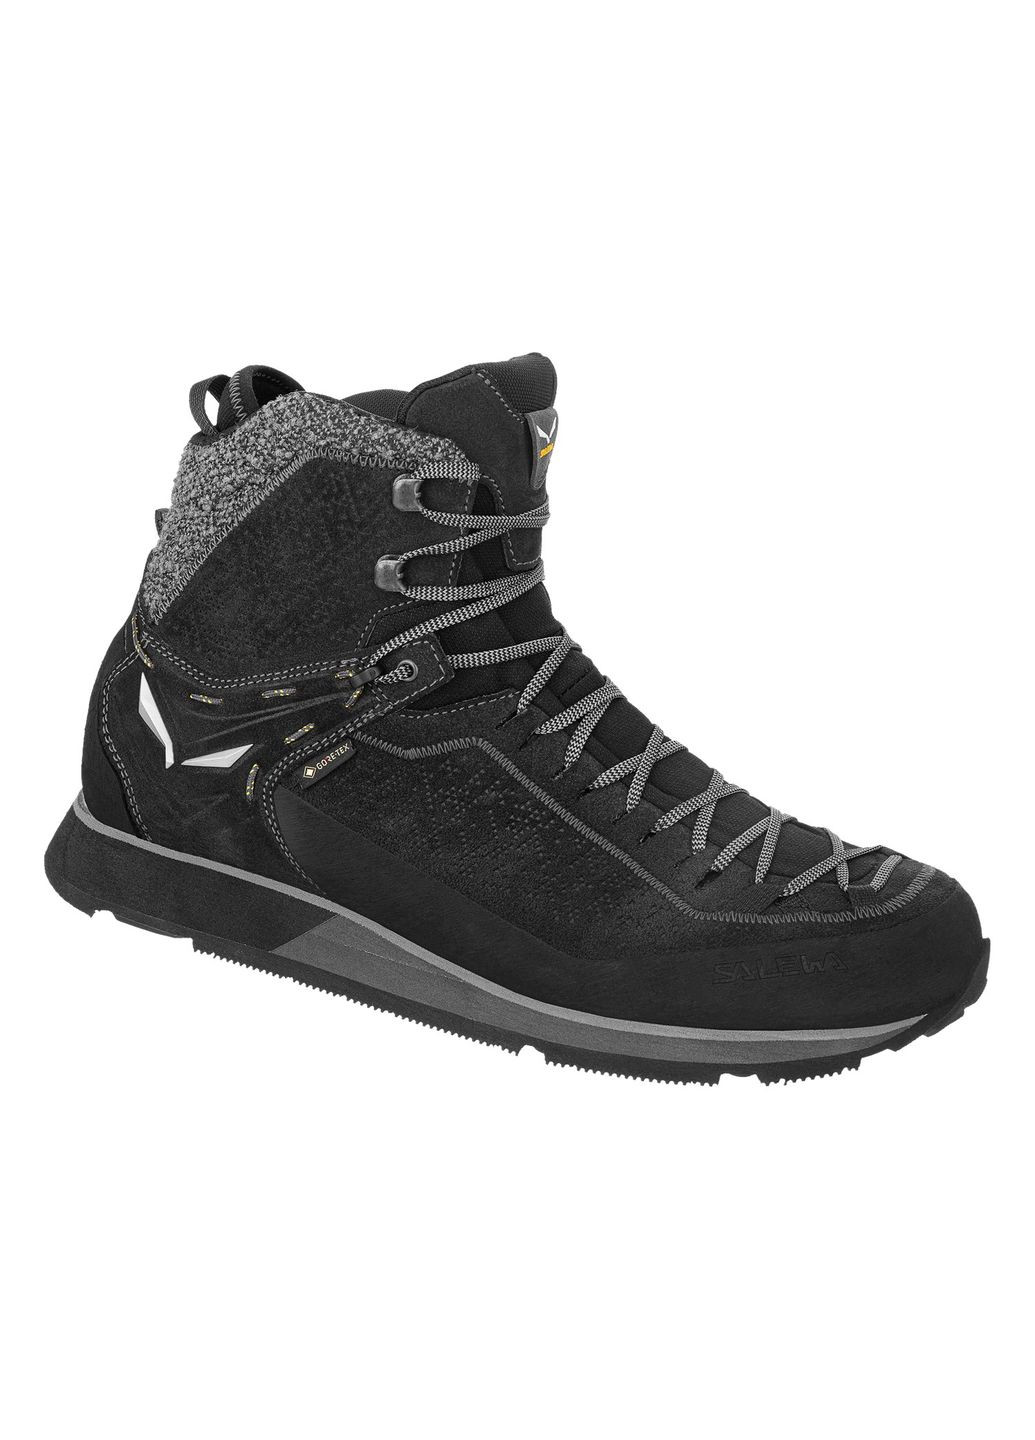 Черные зимние ботинки mtn trainer 2 winter gtx mns Salewa